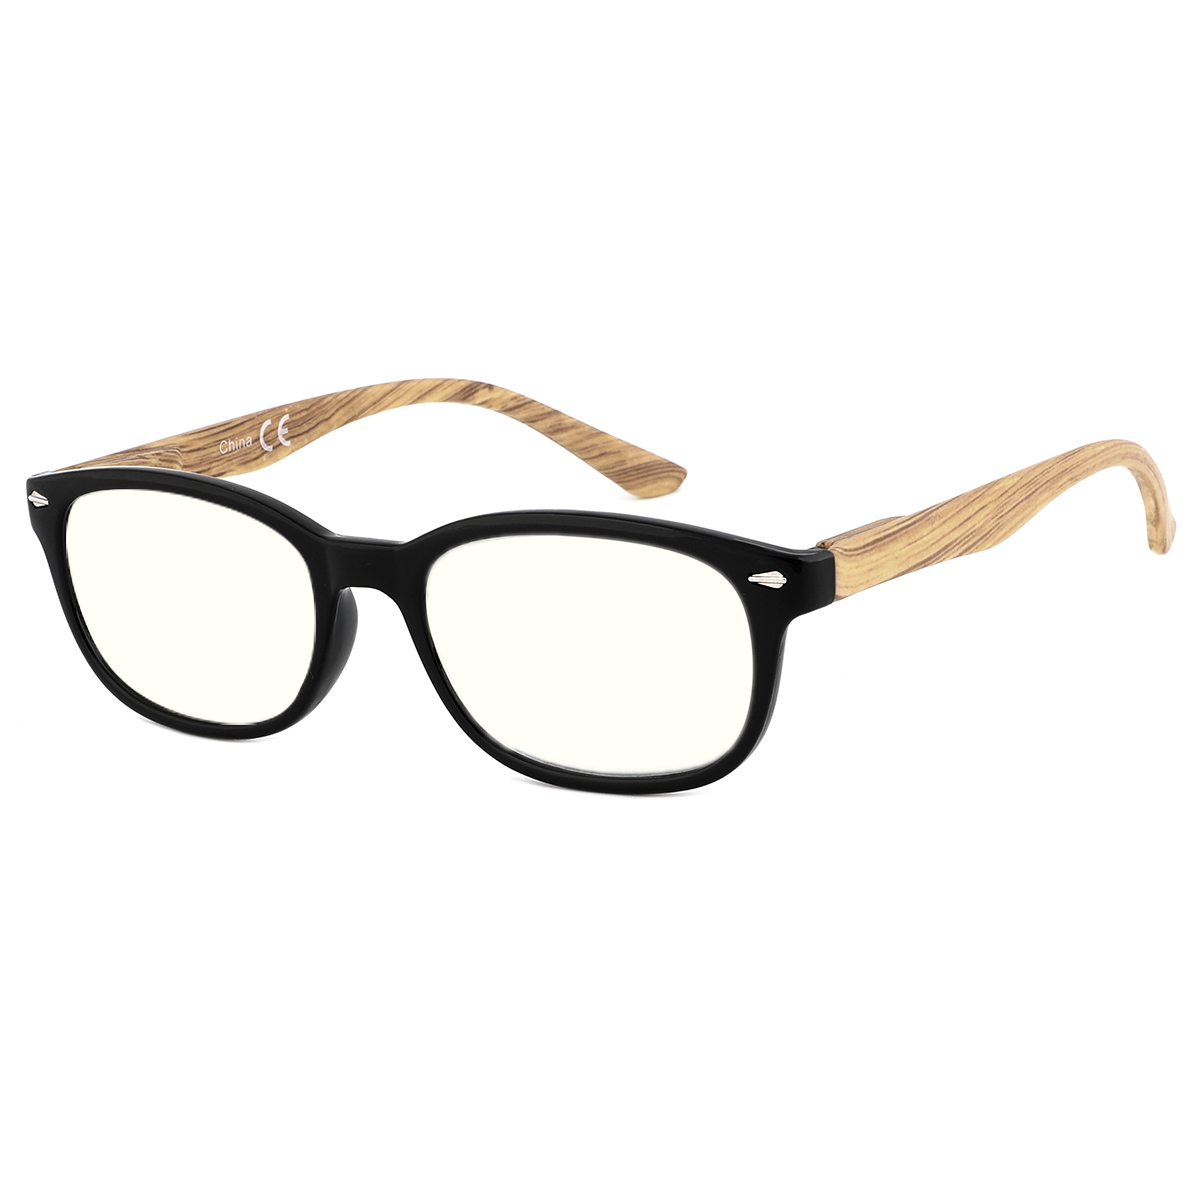 Locus - Oval Black-Wood Reading Glasses for Men & Women